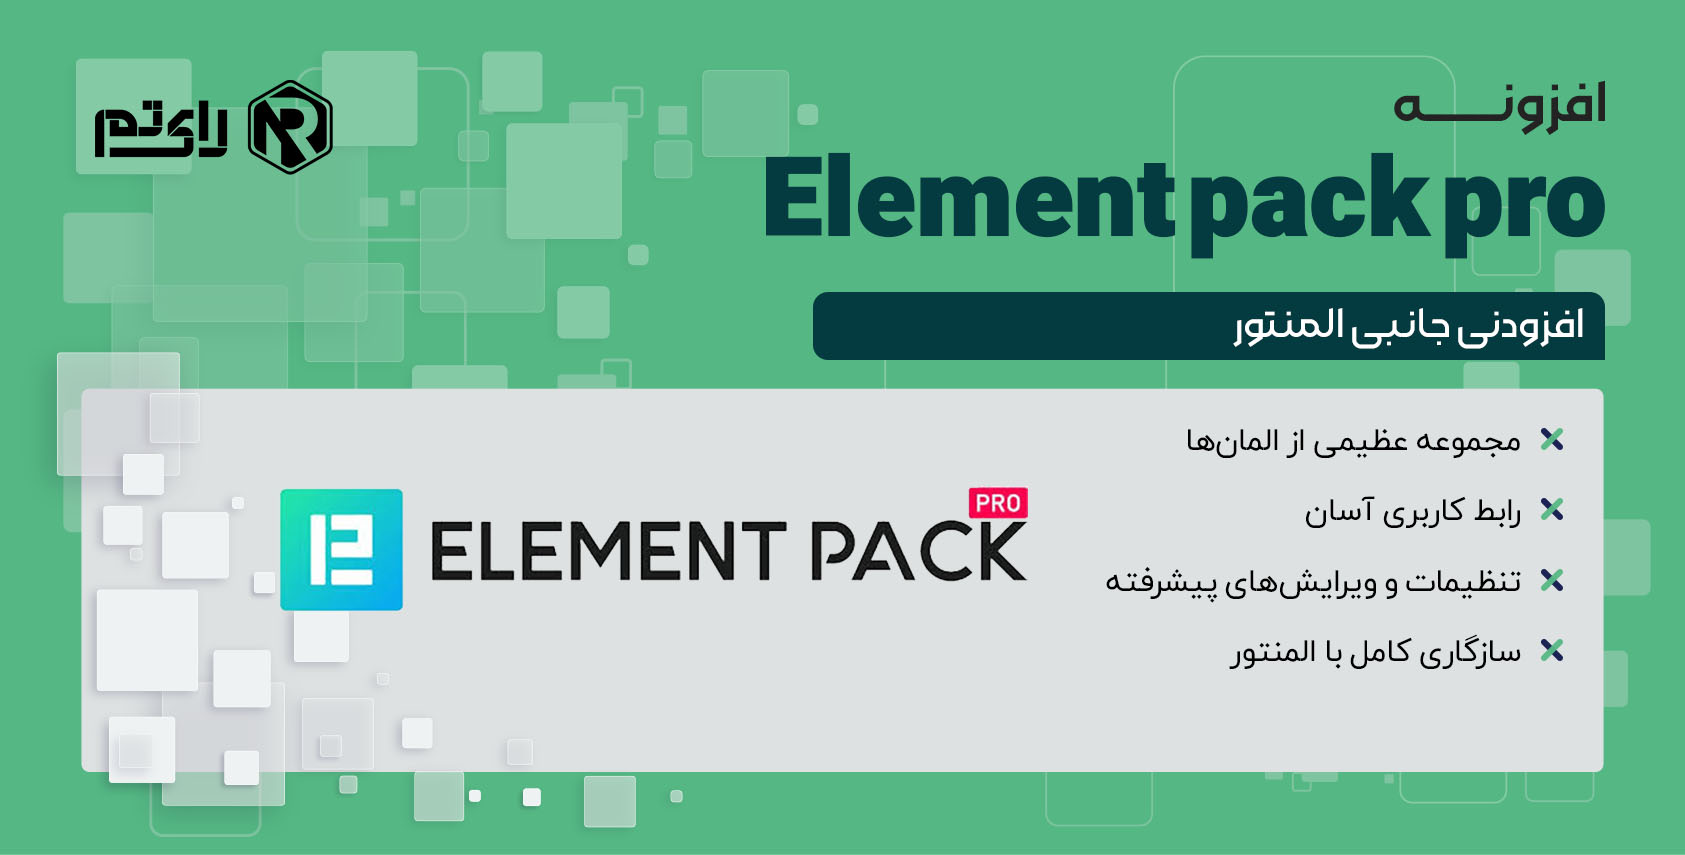 افزونه المنت پک پرو | Element pack pro